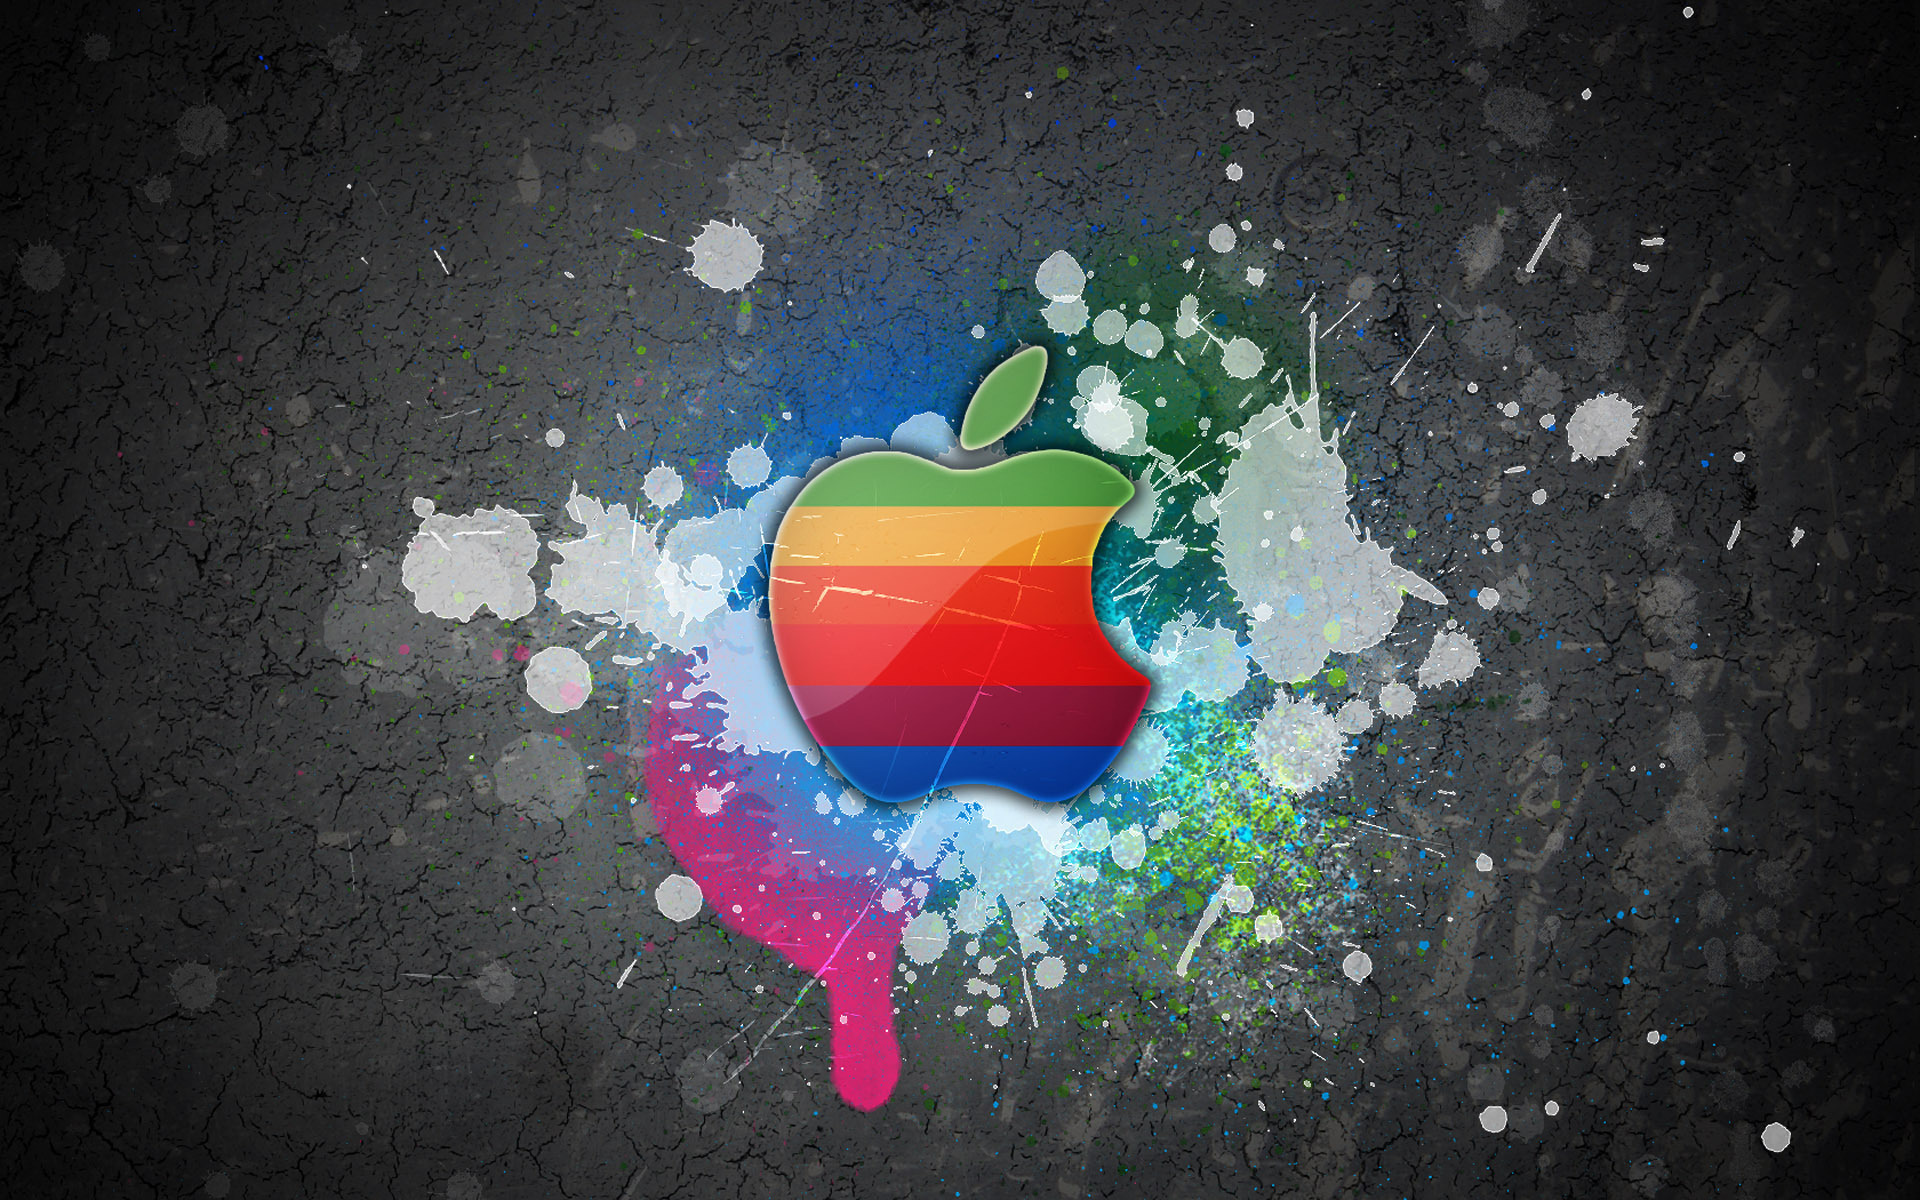 brands, logos, art, apple 2160p